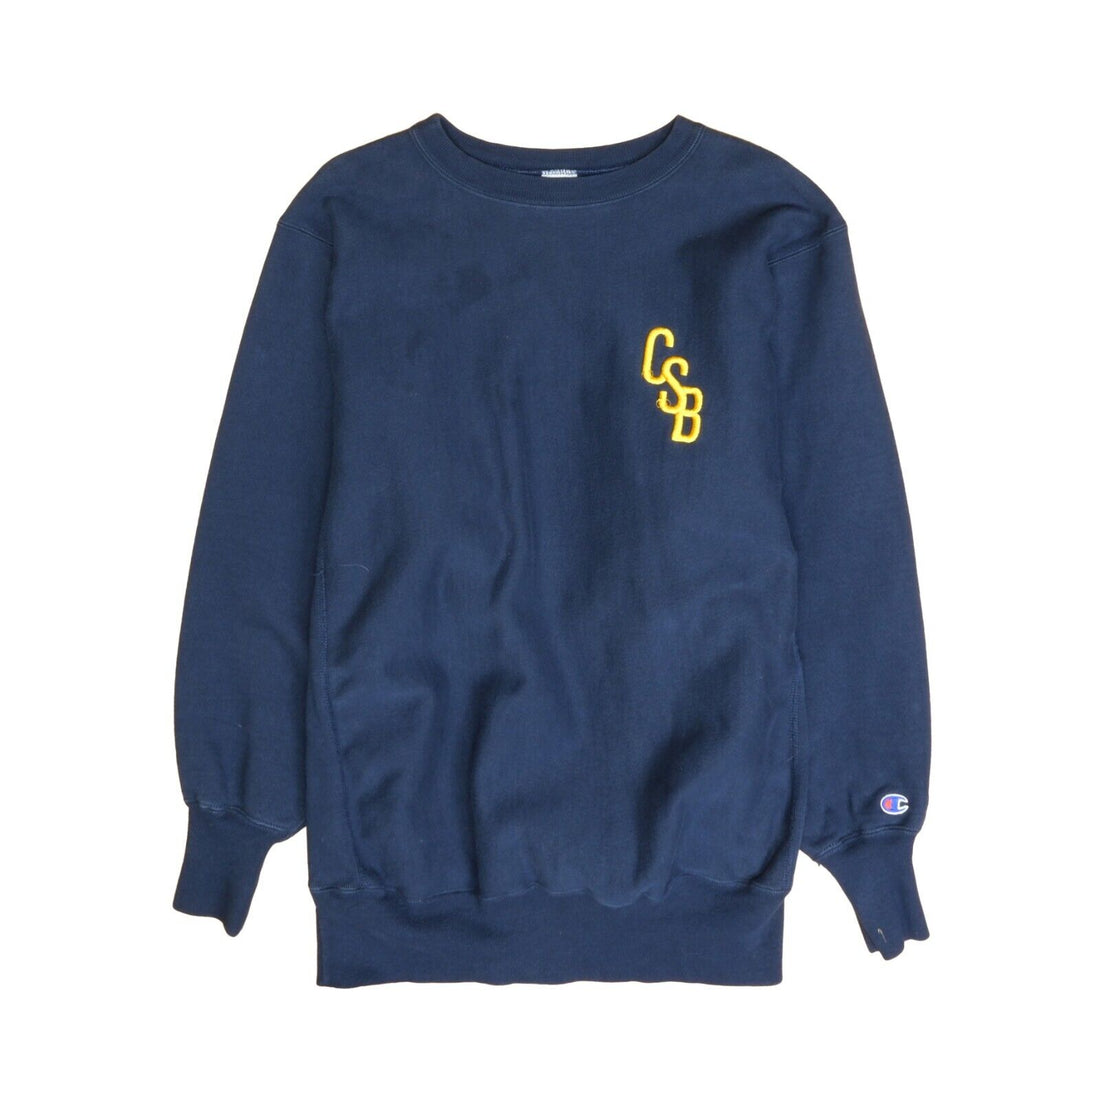 Vintage CSB Champion Reverse Weave Sweatshirt Crewneck Size 2XL Blue 90s